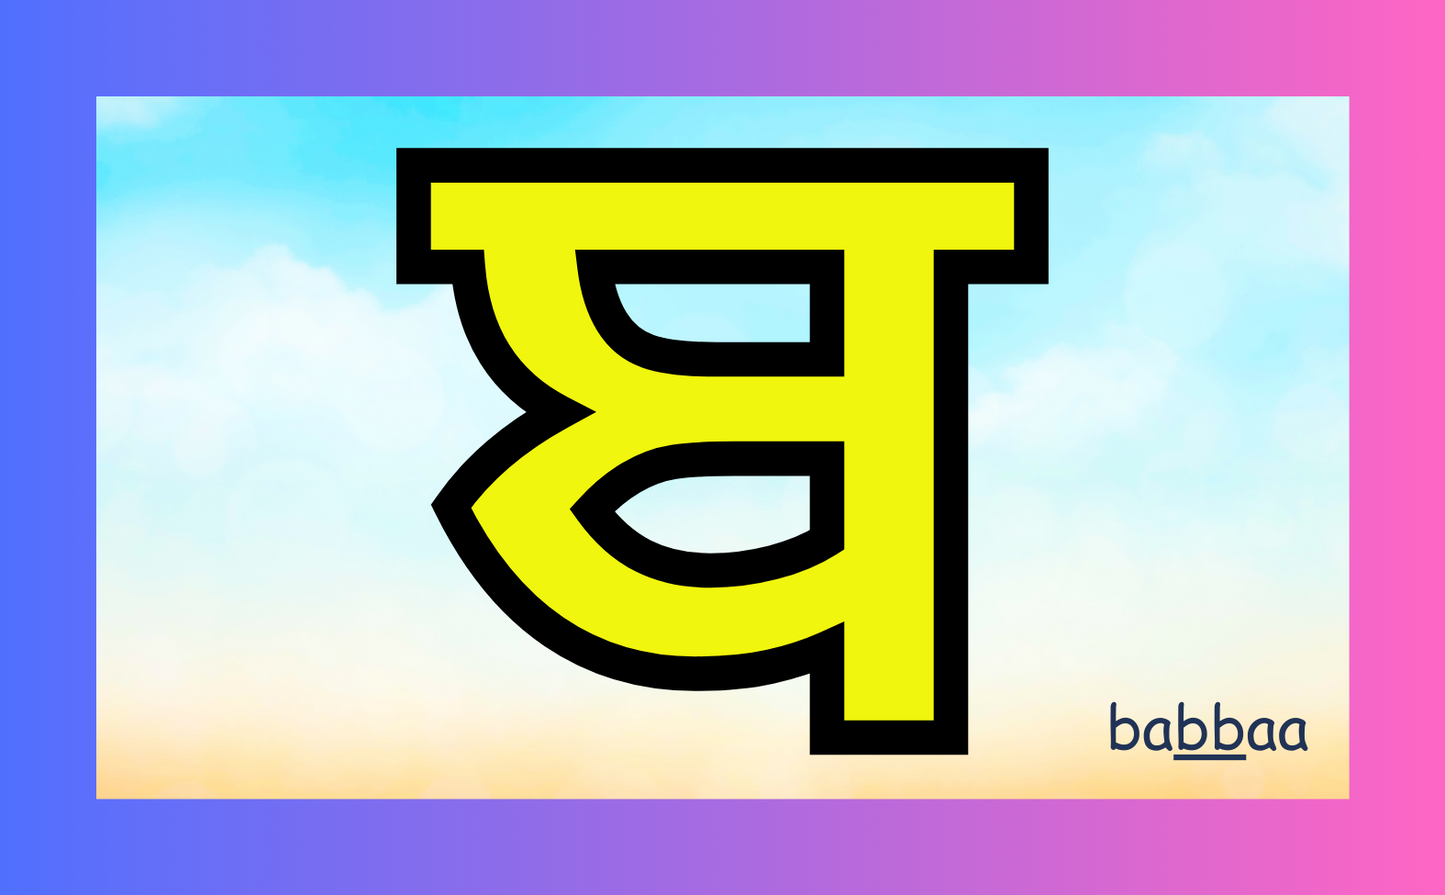 Gurmukhi Alphabets Flashcard set